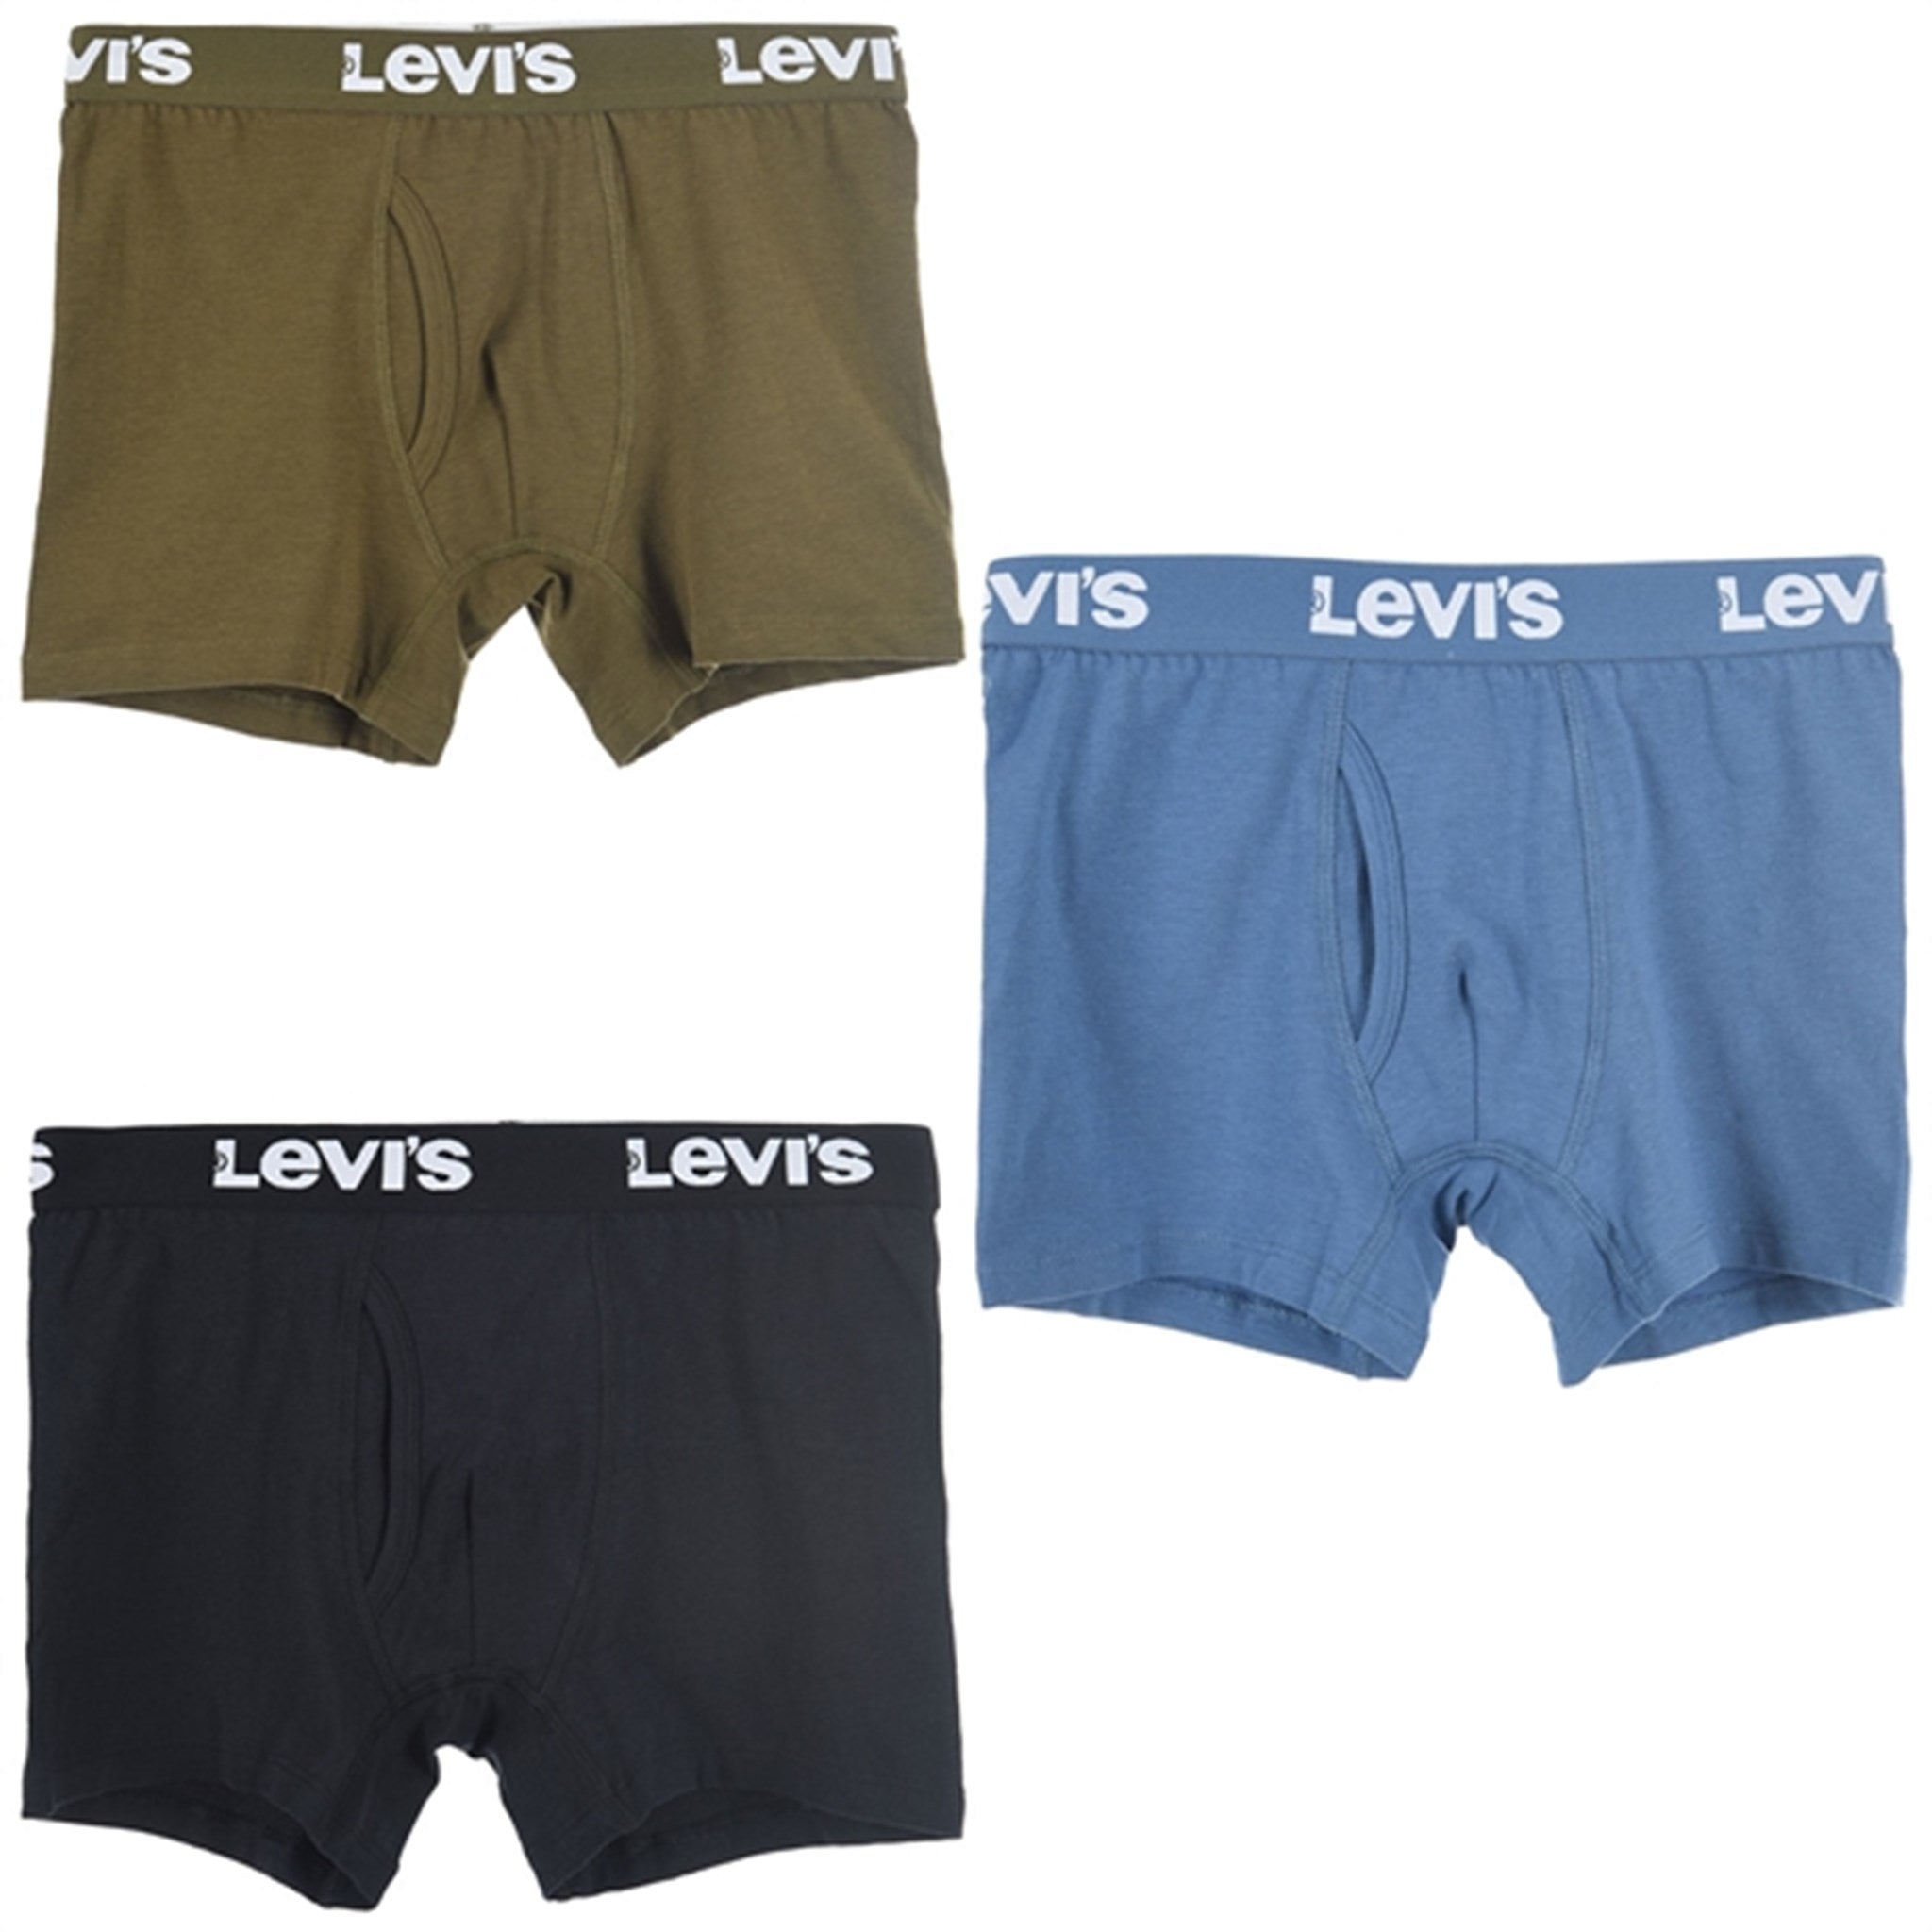 Levi's Boxer Briefs 3-Pack Black